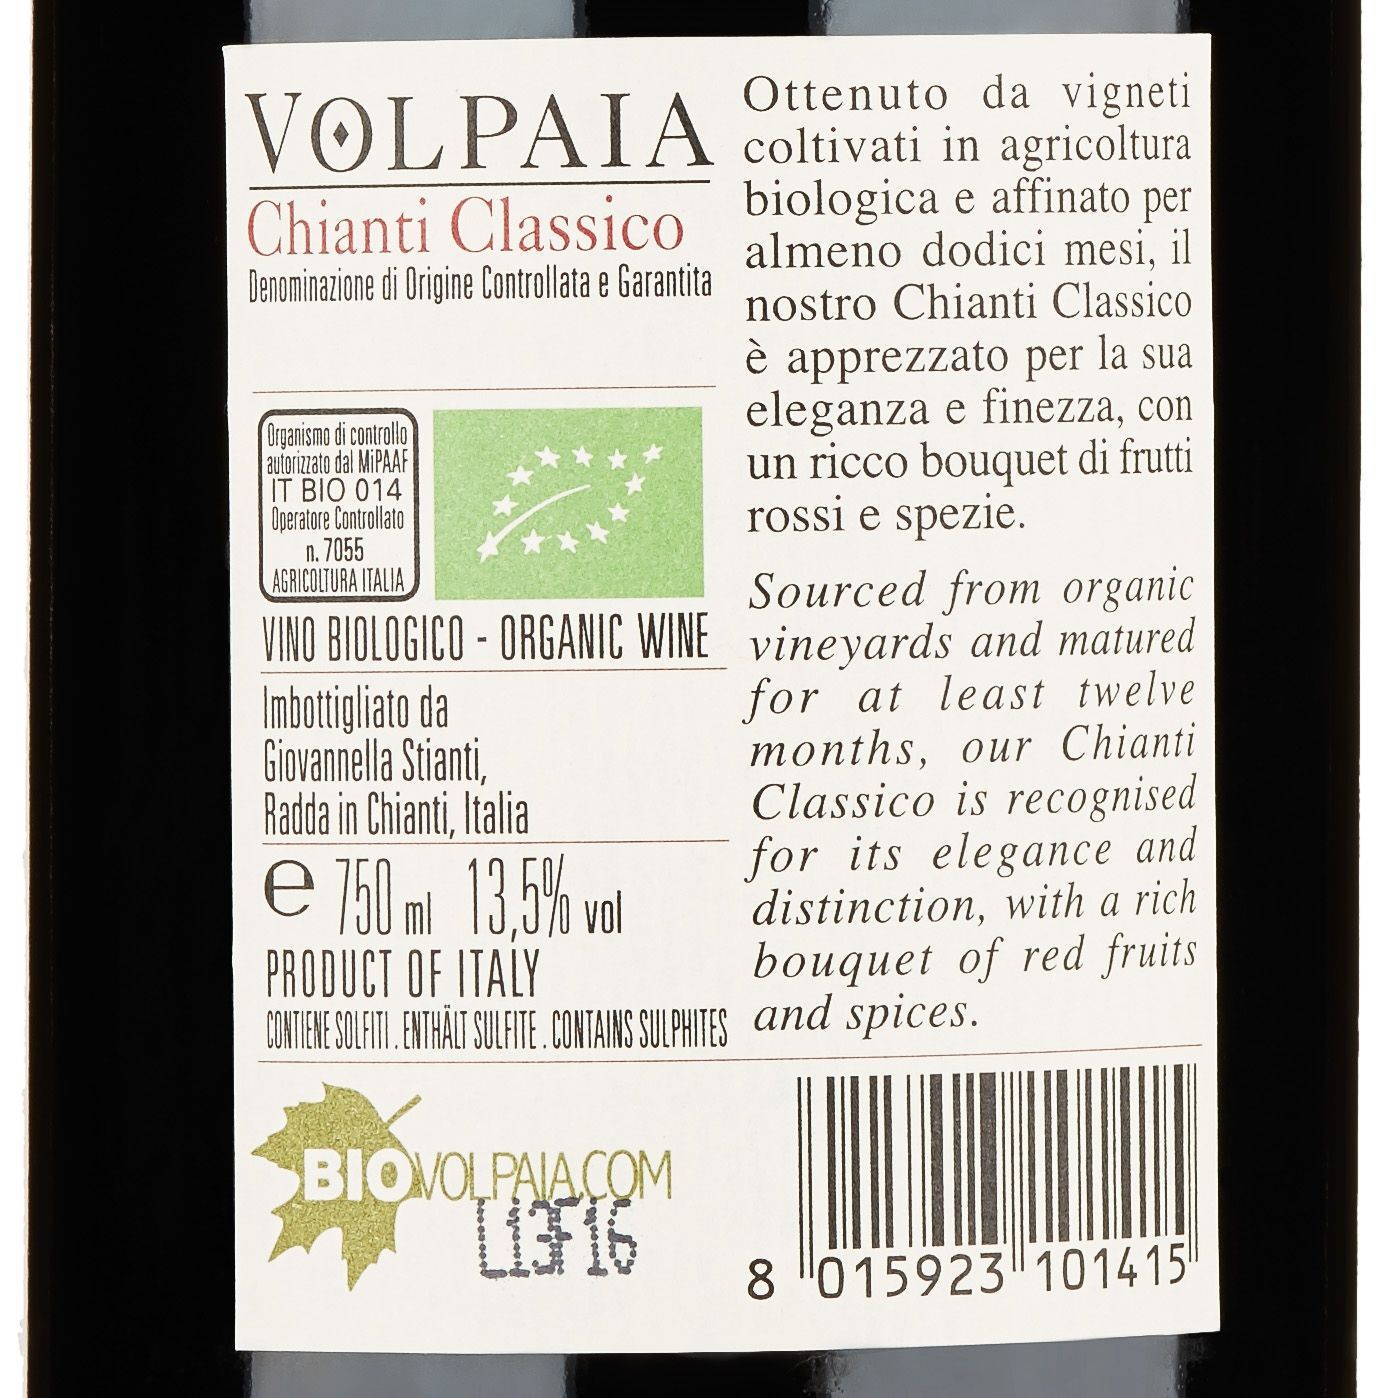 Castello di Volpaia Chianti Classico 2015 Set 6 bottles - 4